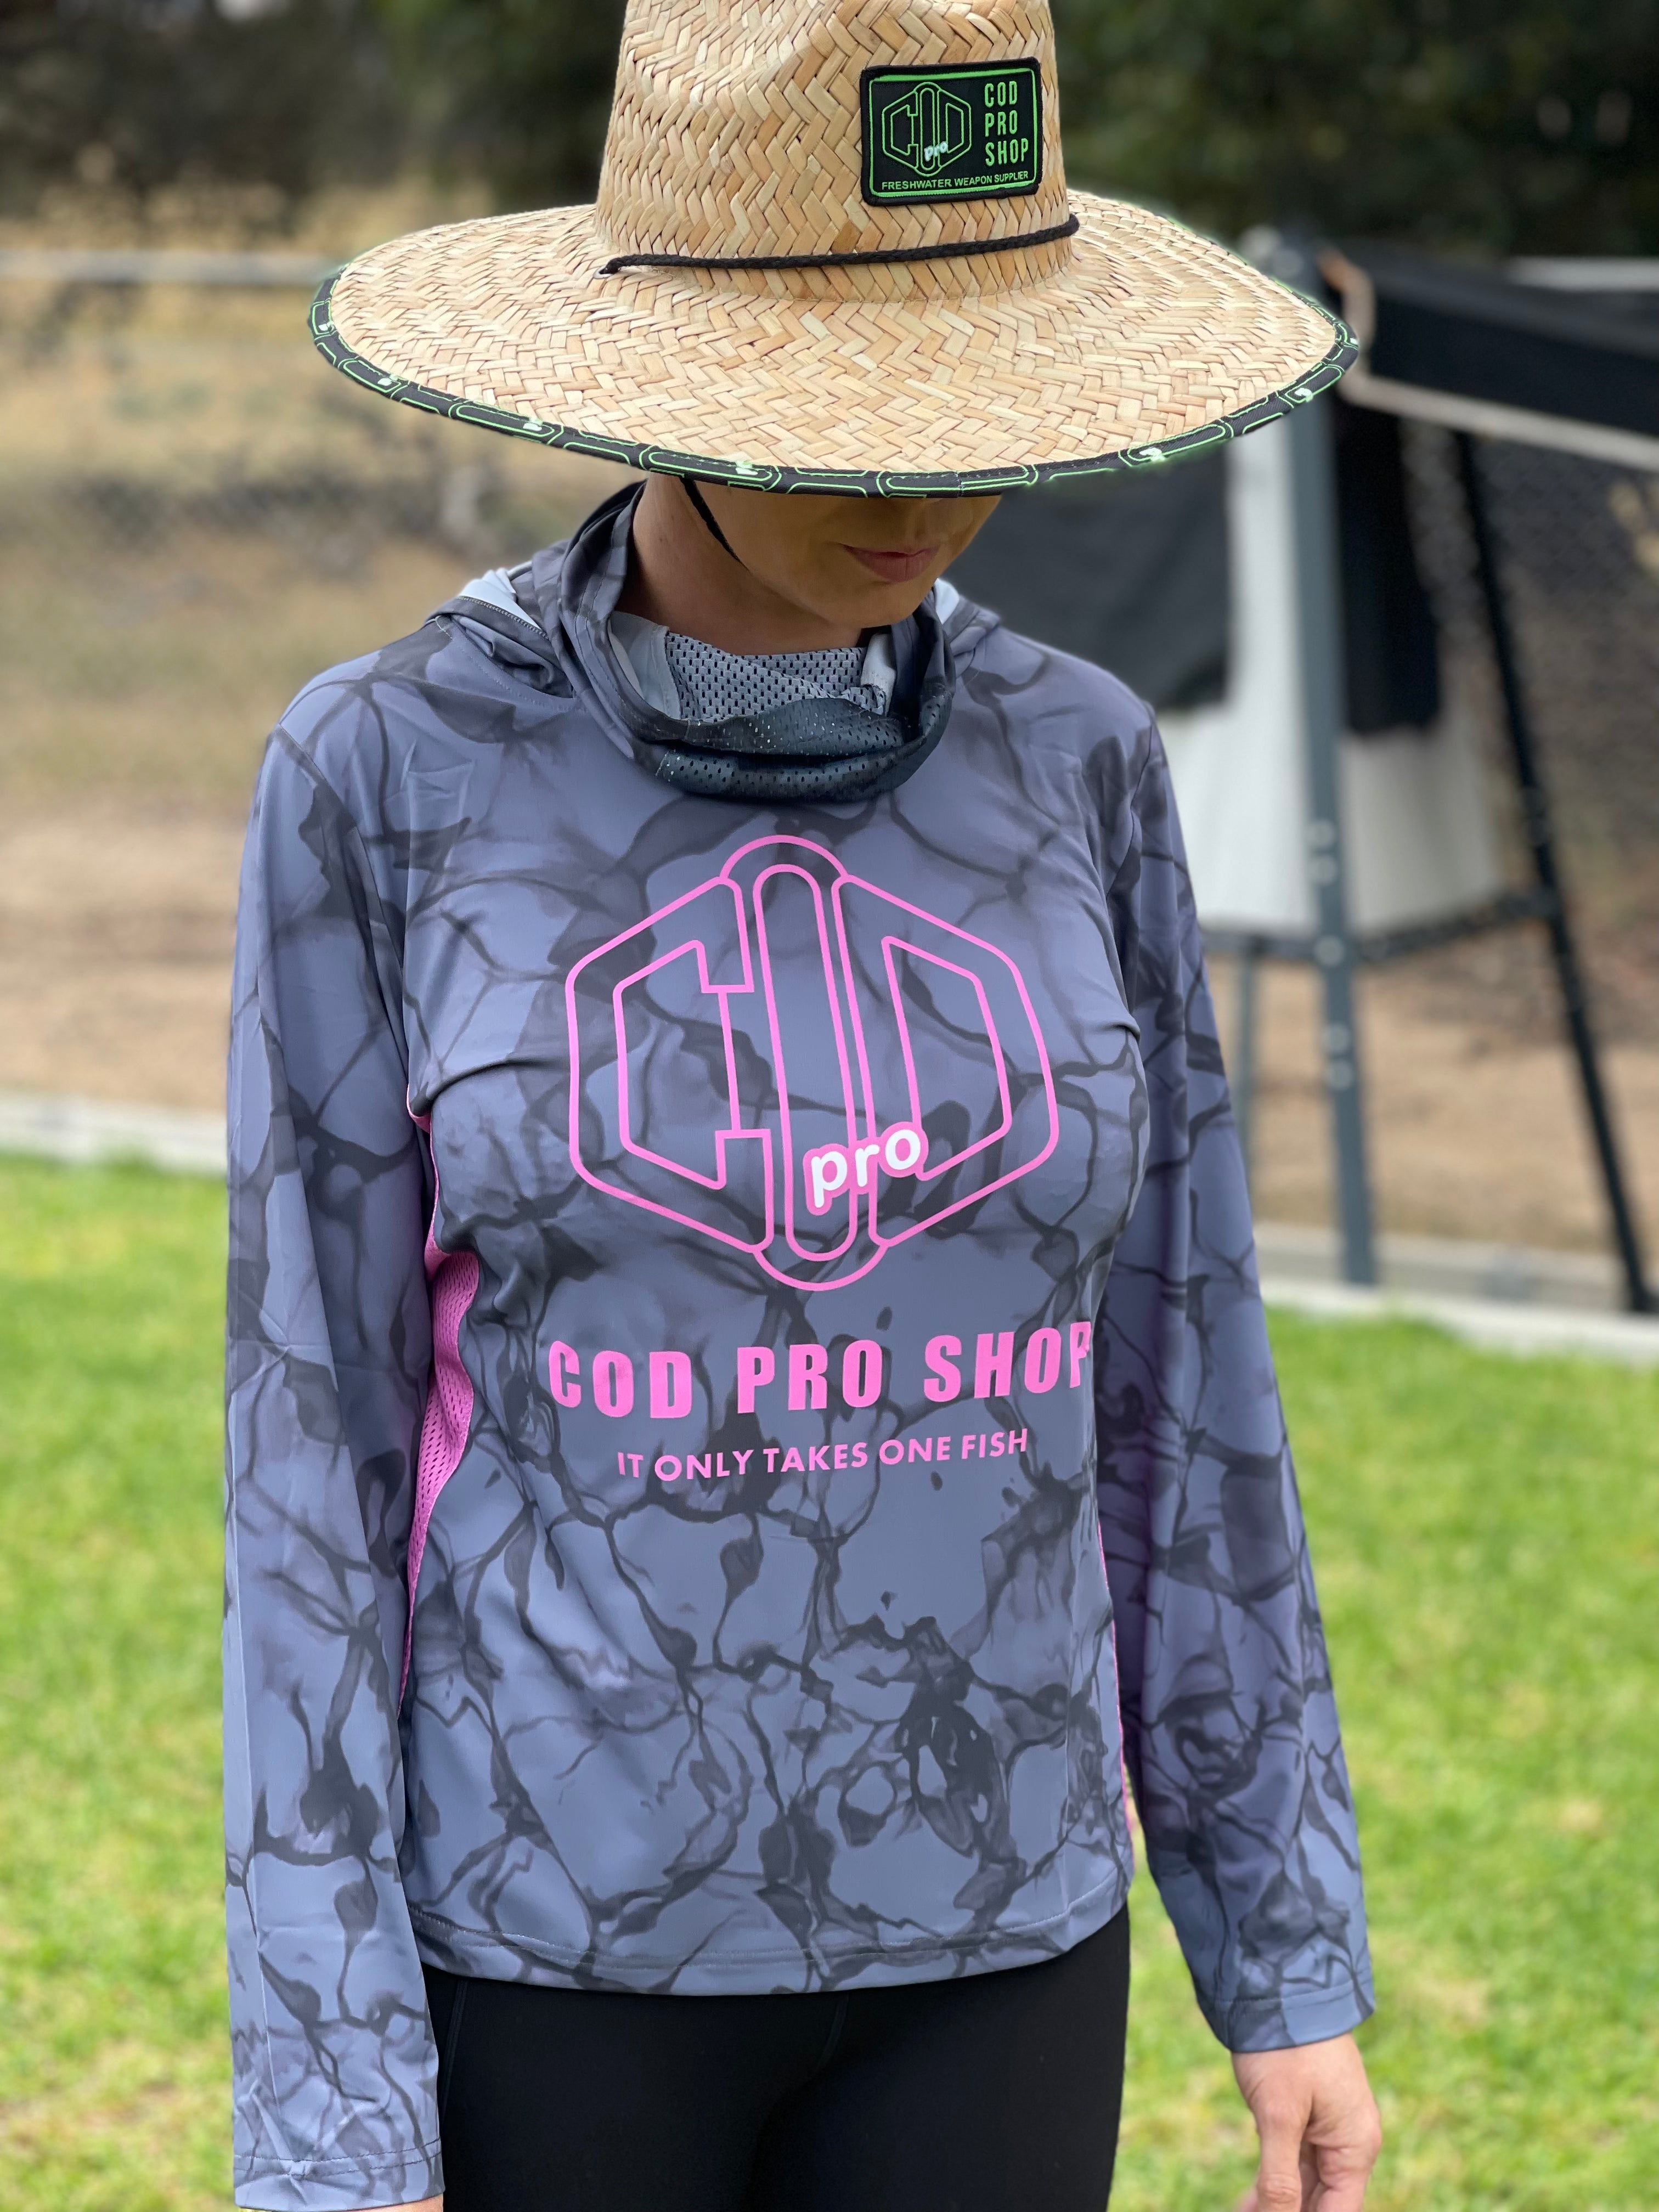 Fishing shirt women's – Cod Pro Shop